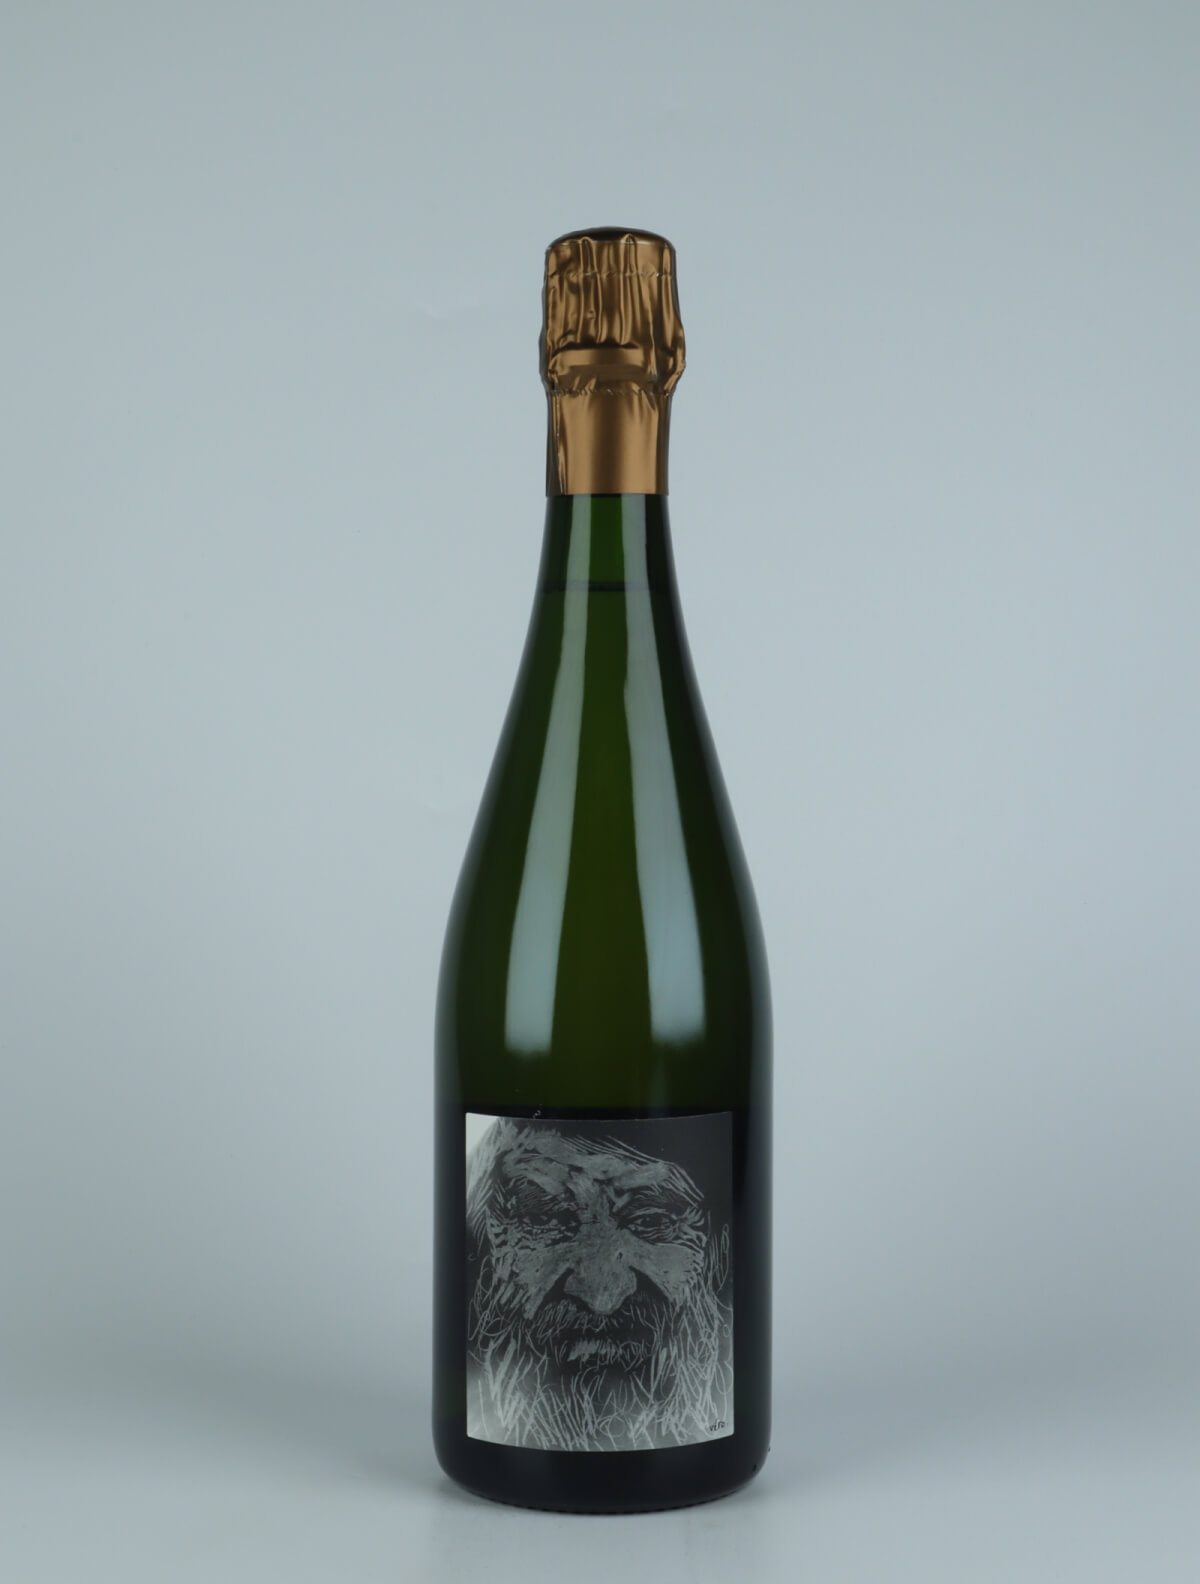 En flaske 2017 Heraclite - Pinot Noir - Brut Nature Mousserende fra Stroebel, Champagne i Frankrig